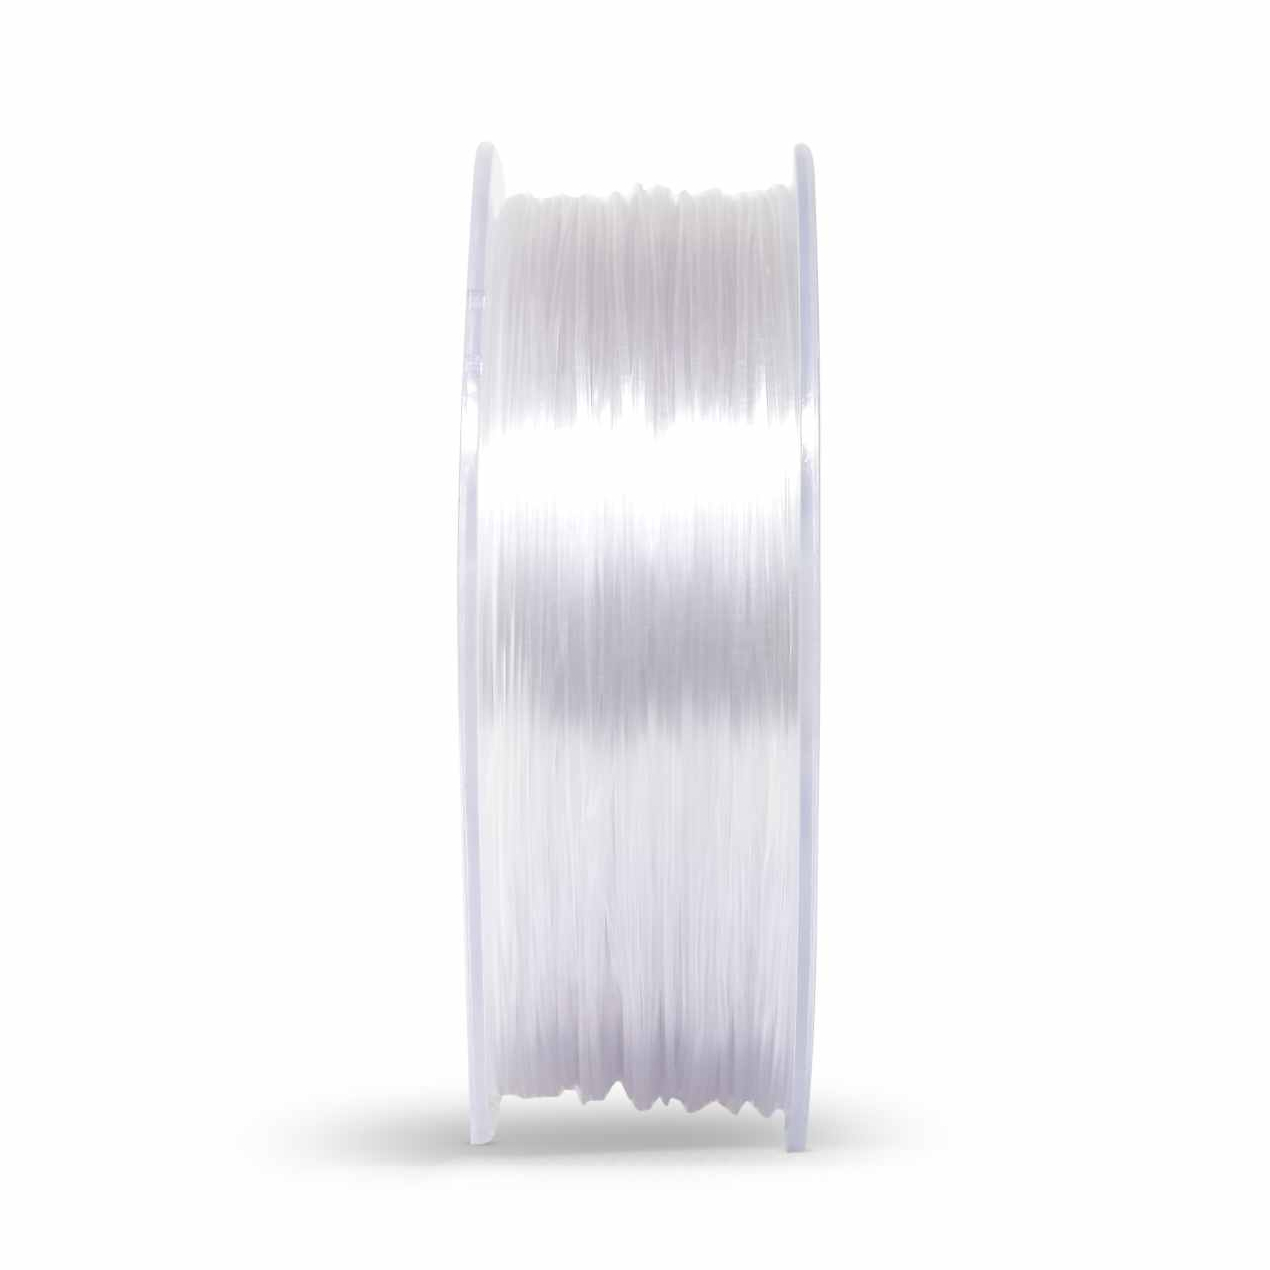 Z3D PETG filament transparent